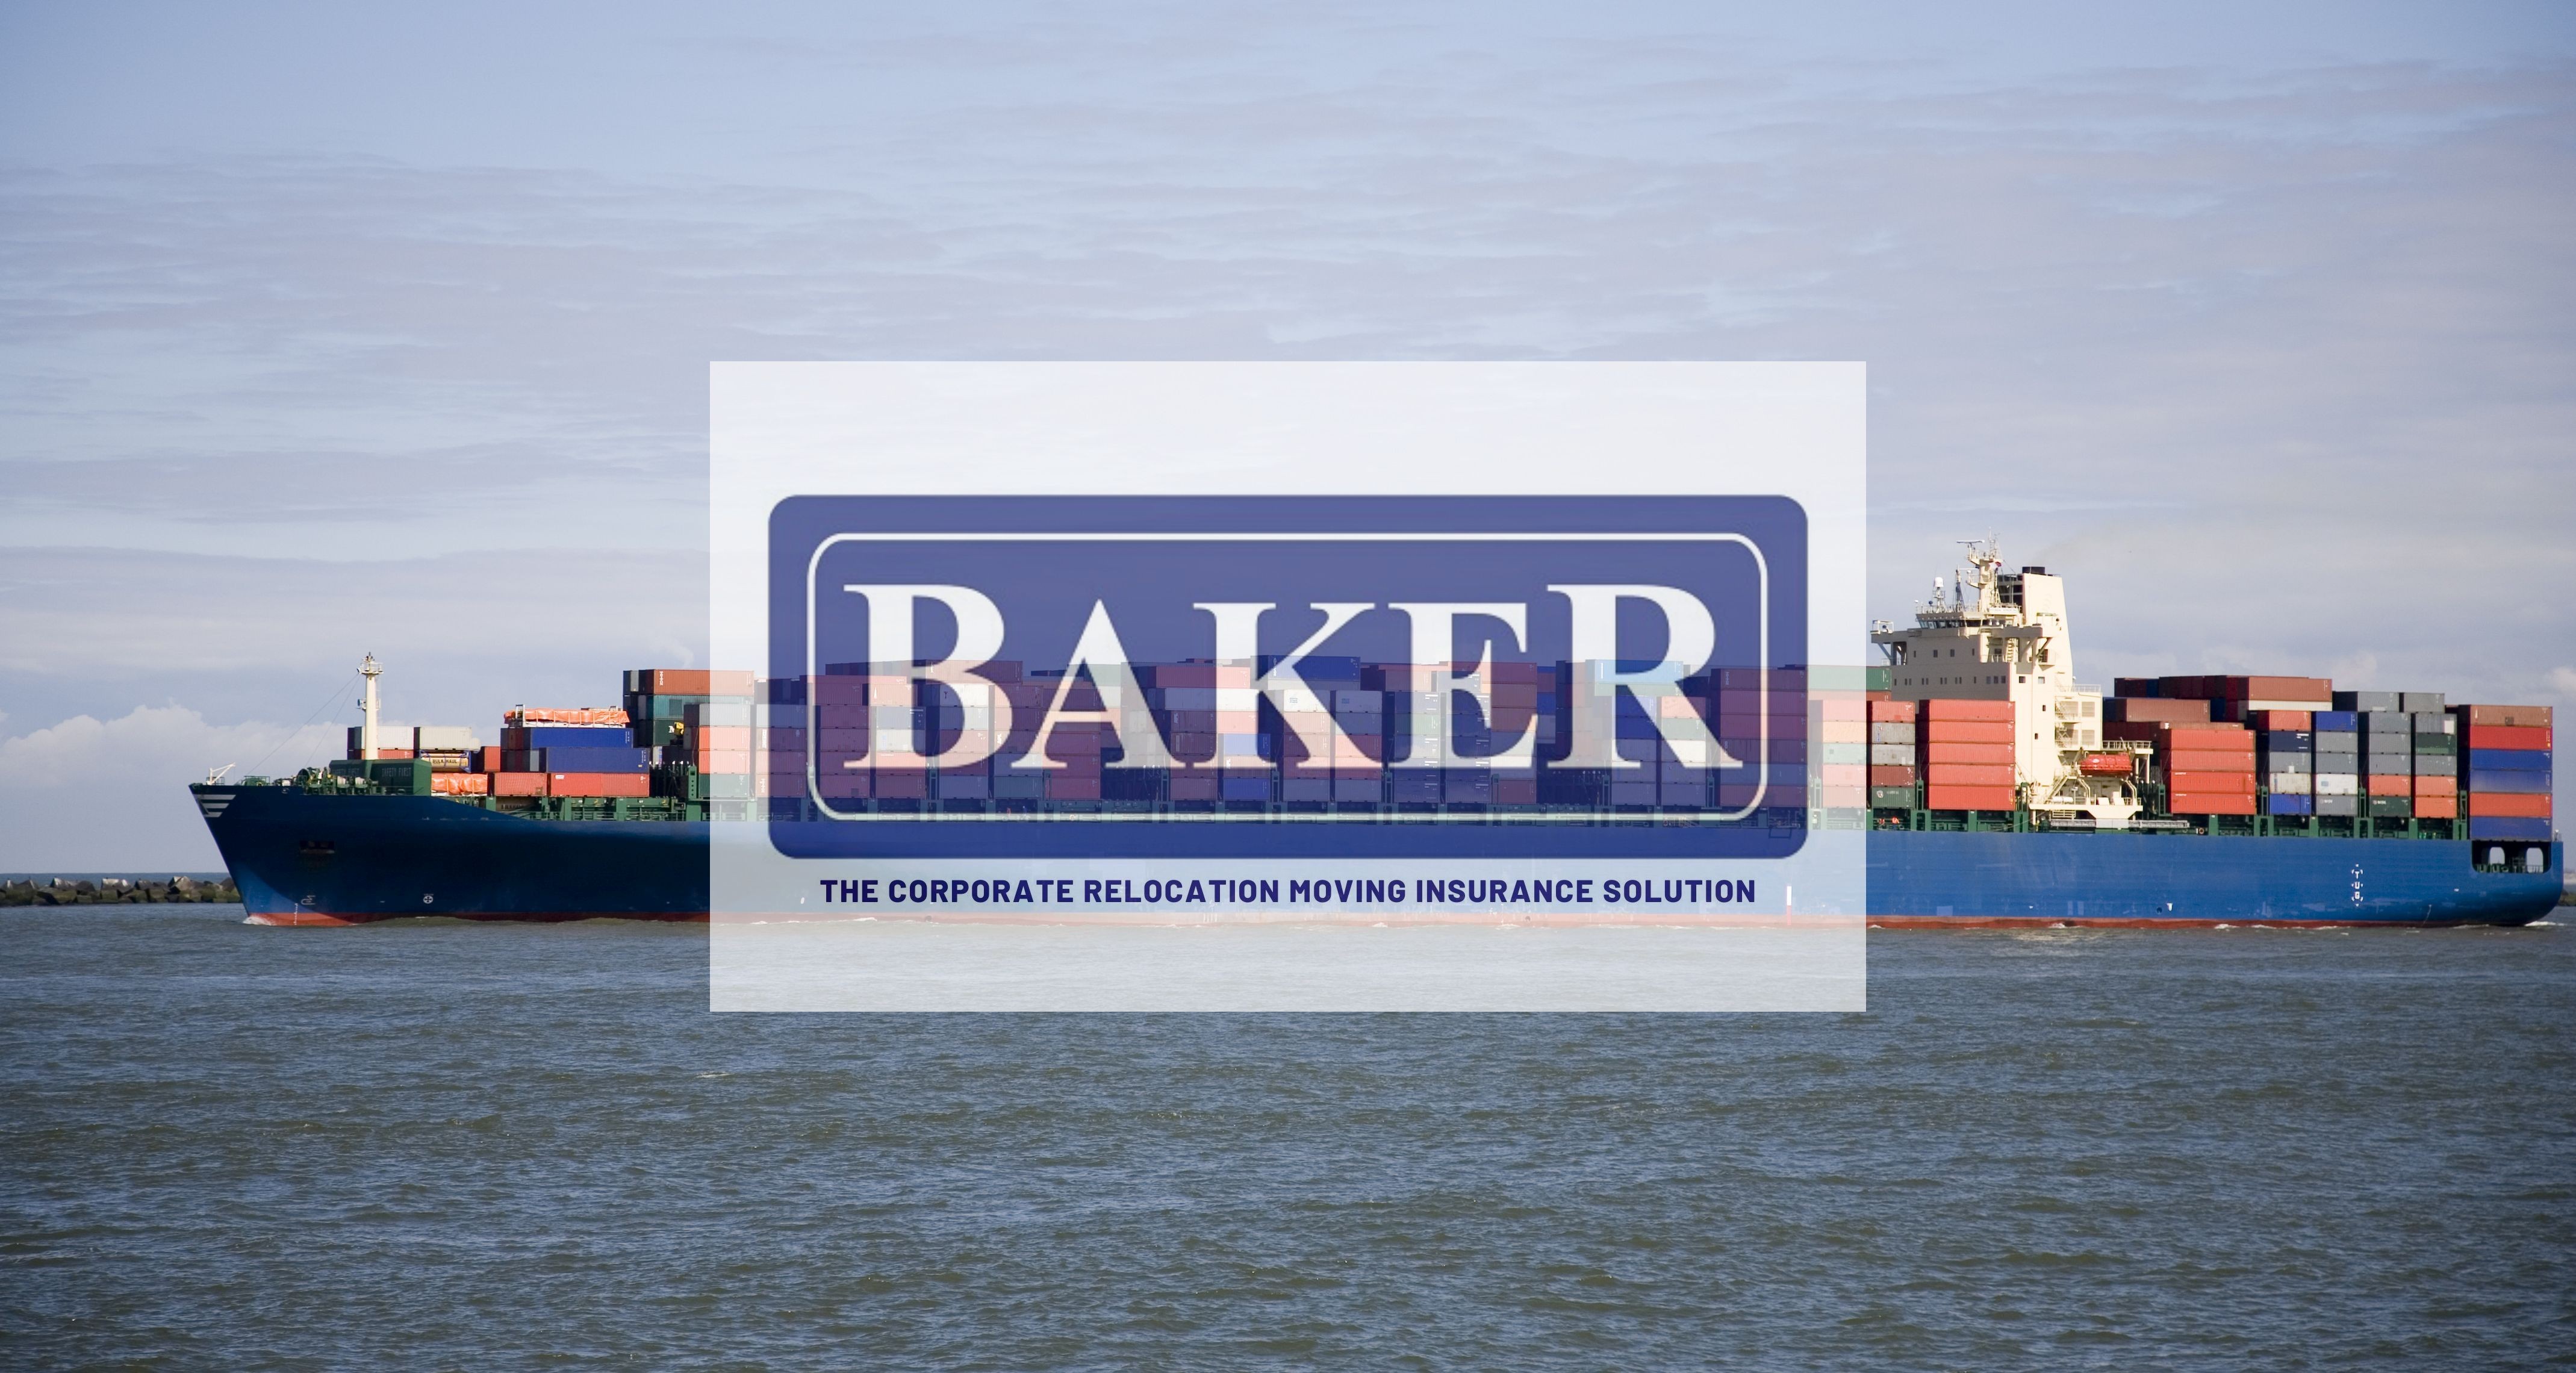 Baker International Insurance Linkedin